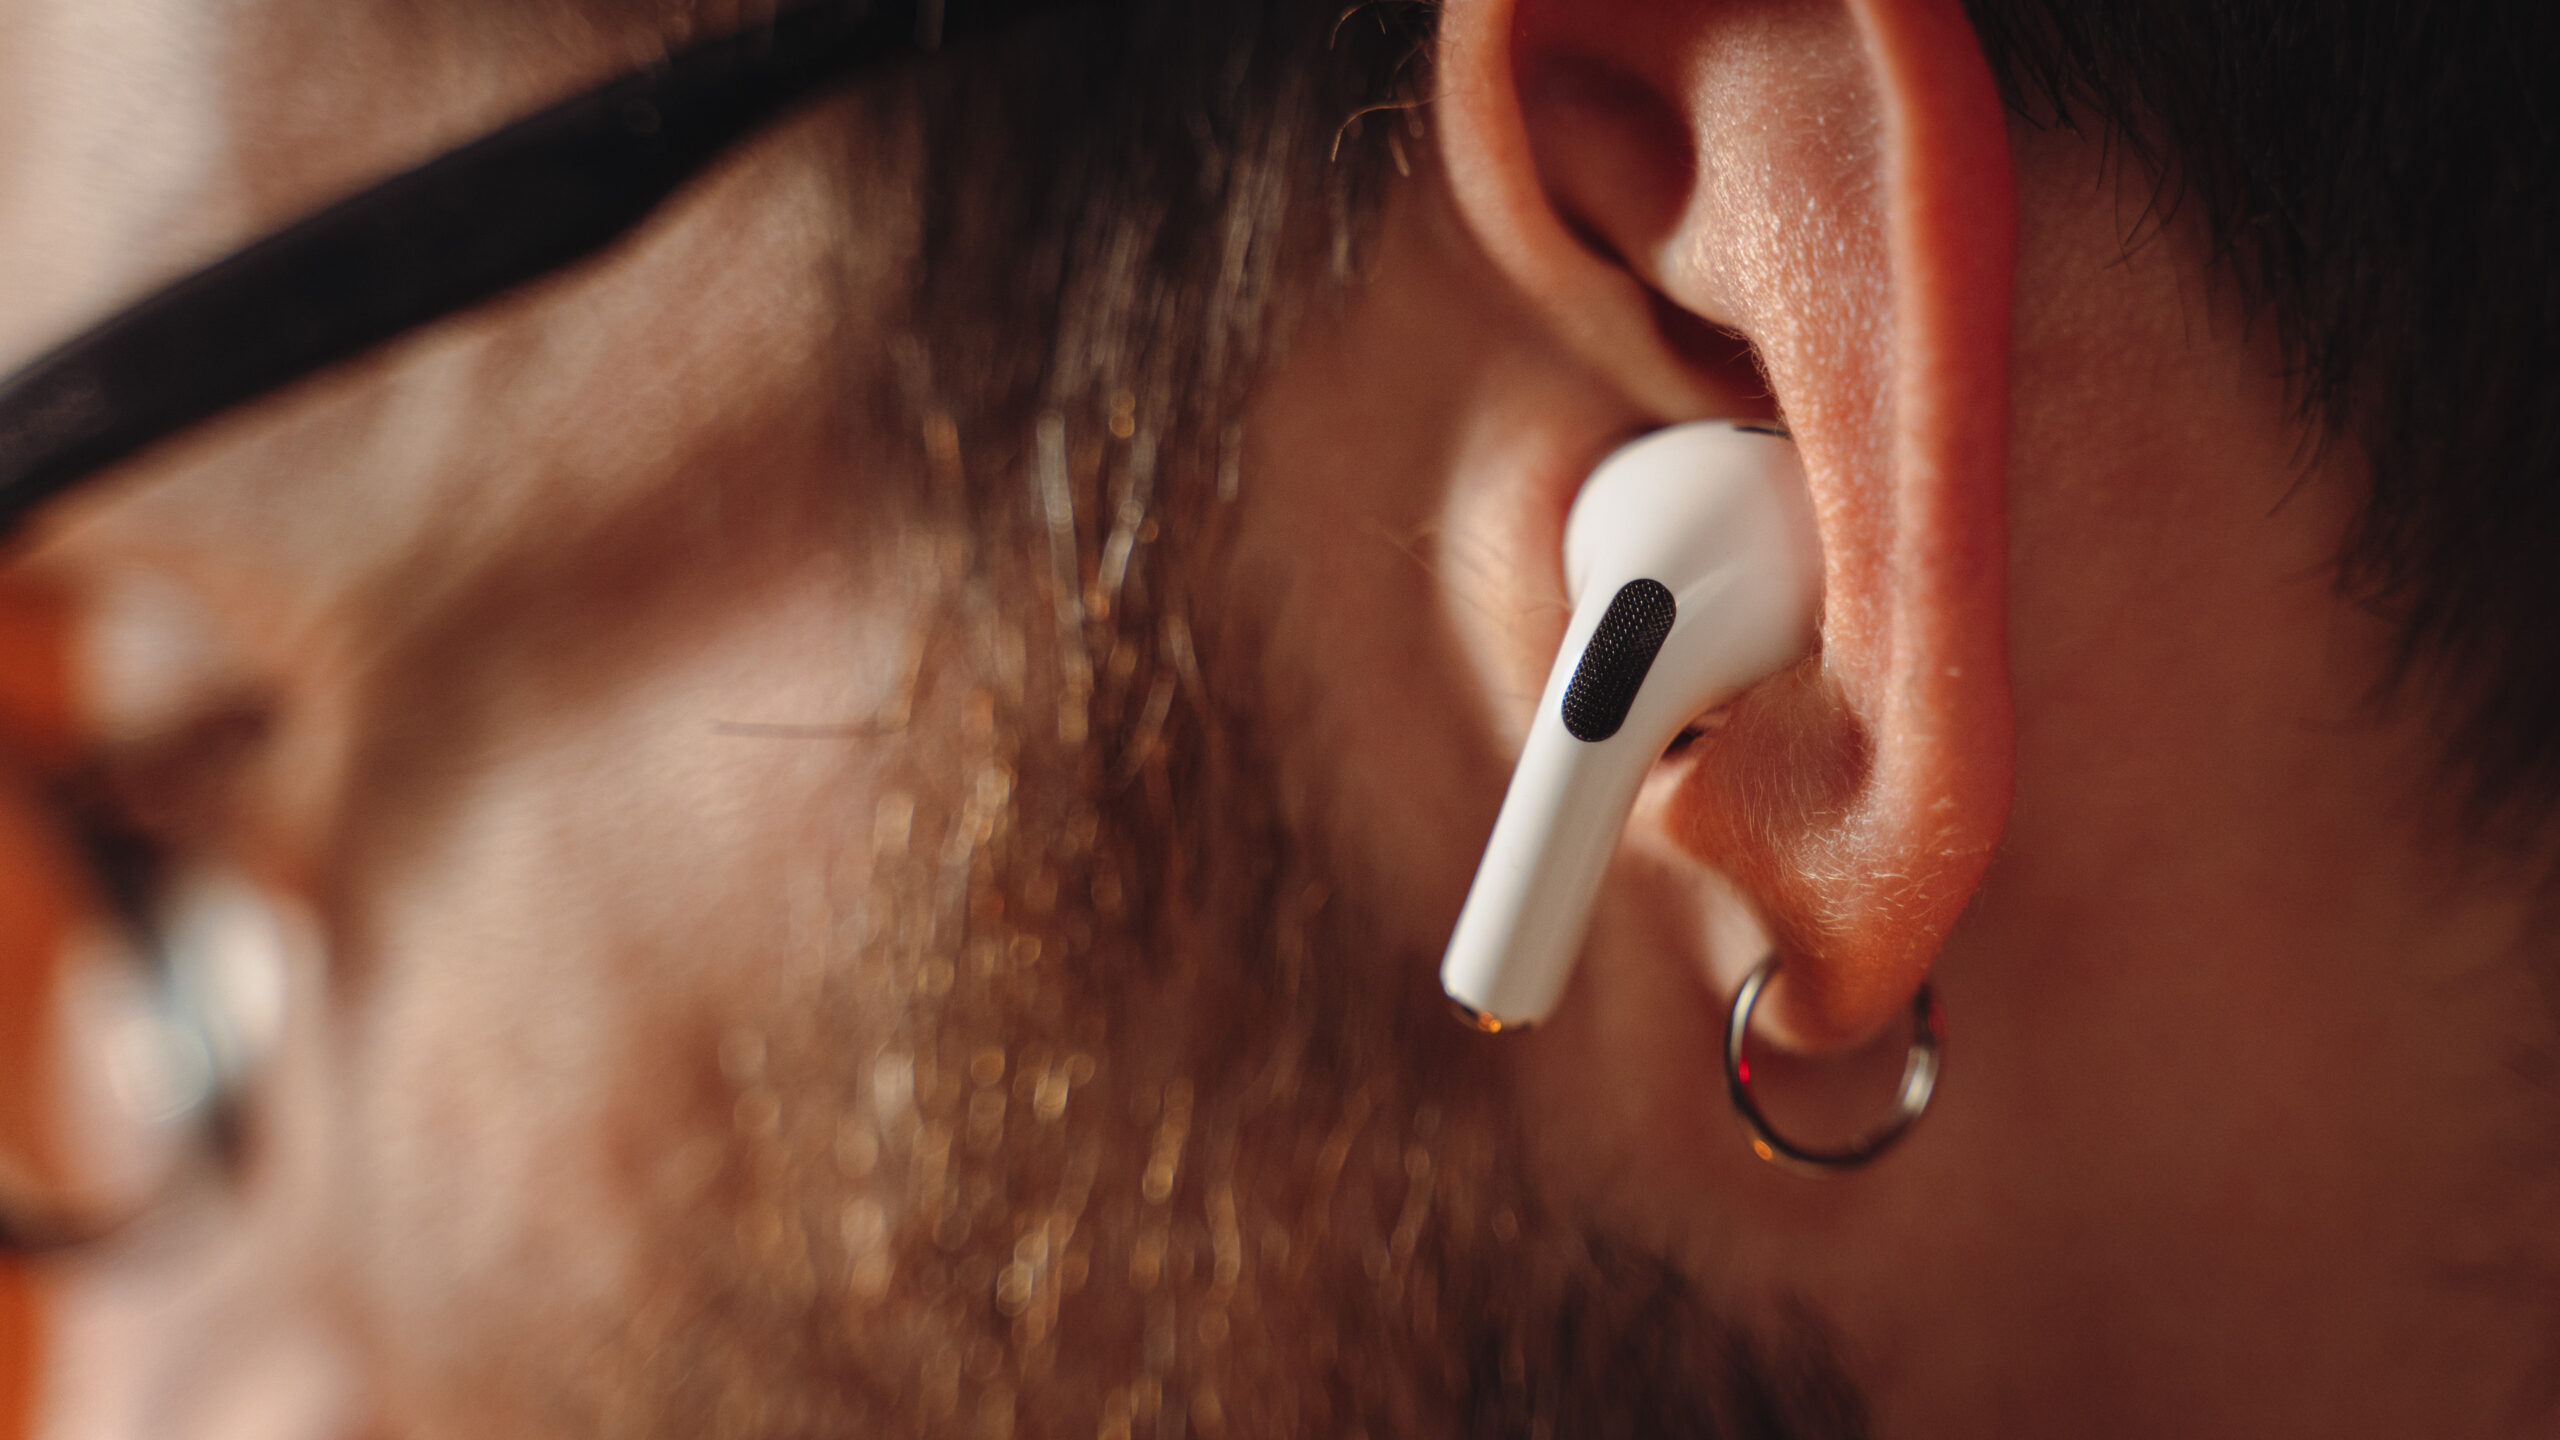 Apple AirPods : des écouteurs sans fil haut de gamme pour l'iPhone